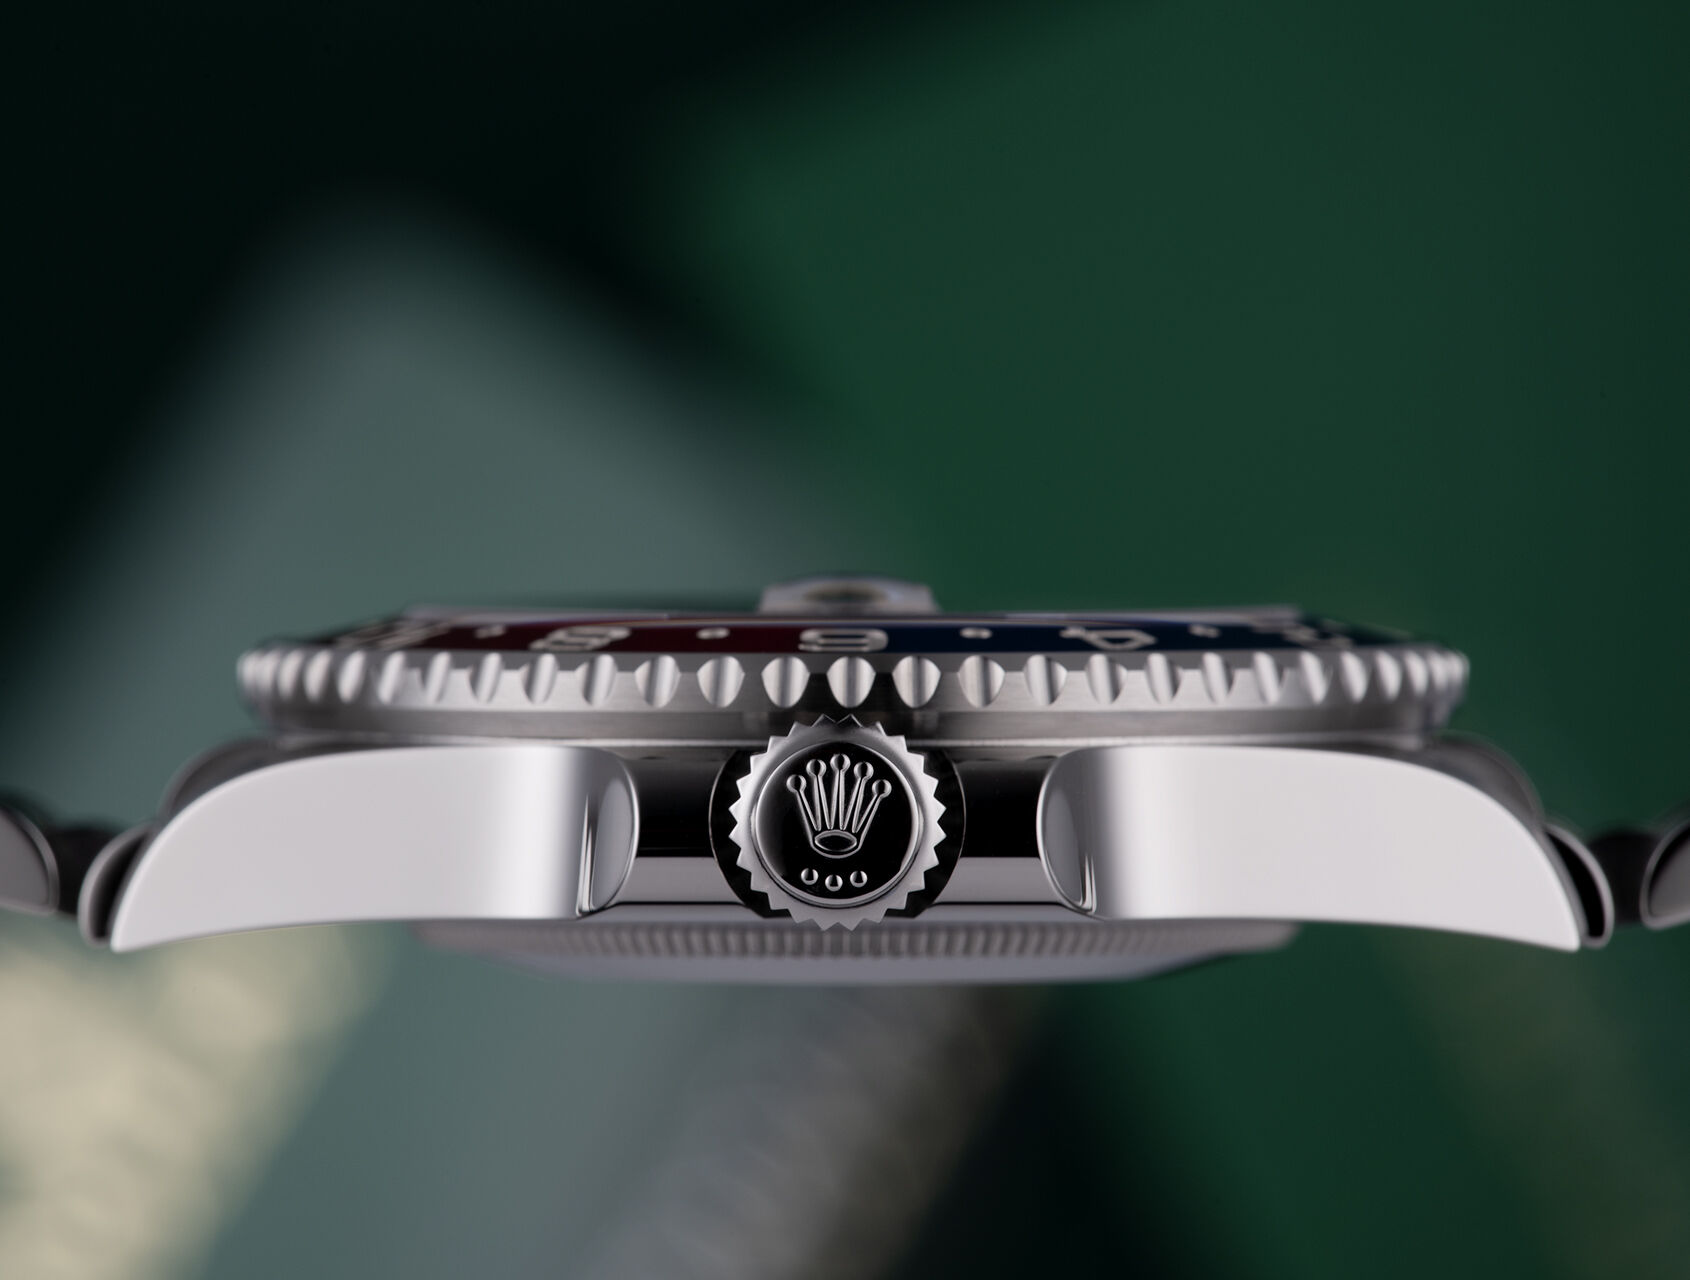 ref 126710BLRO | 126710BLRO - Rolex Warranty to 2026 | Rolex GMT-Master II